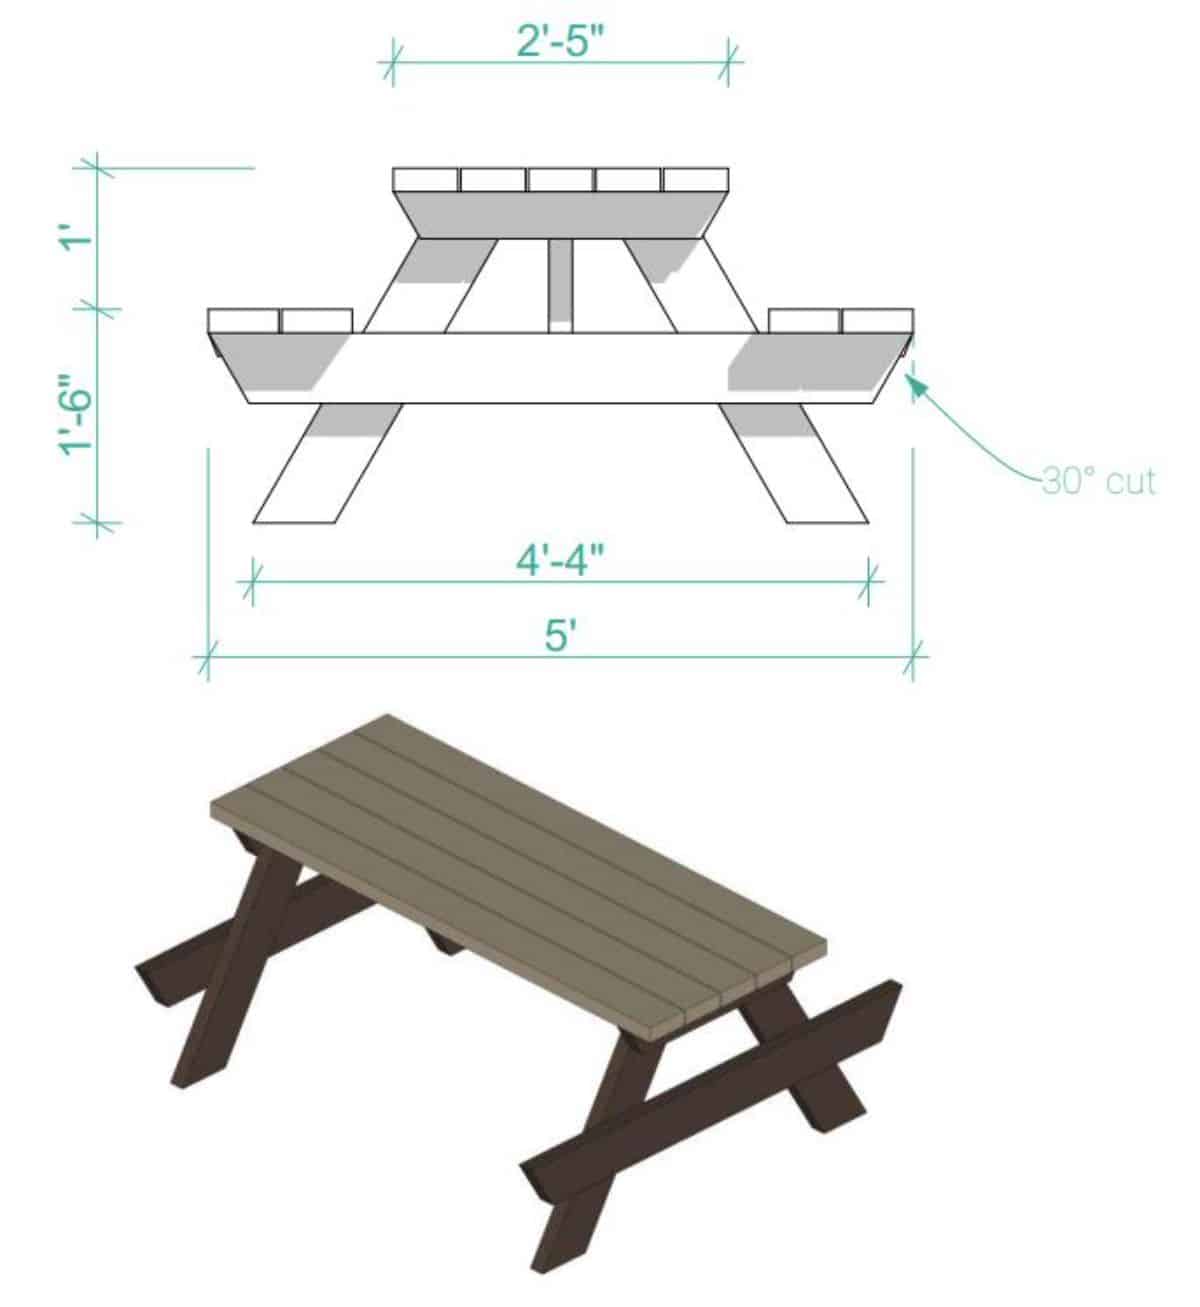 Cómo construir una mesa de picnic DIY - Paso 1: Construir el tablero